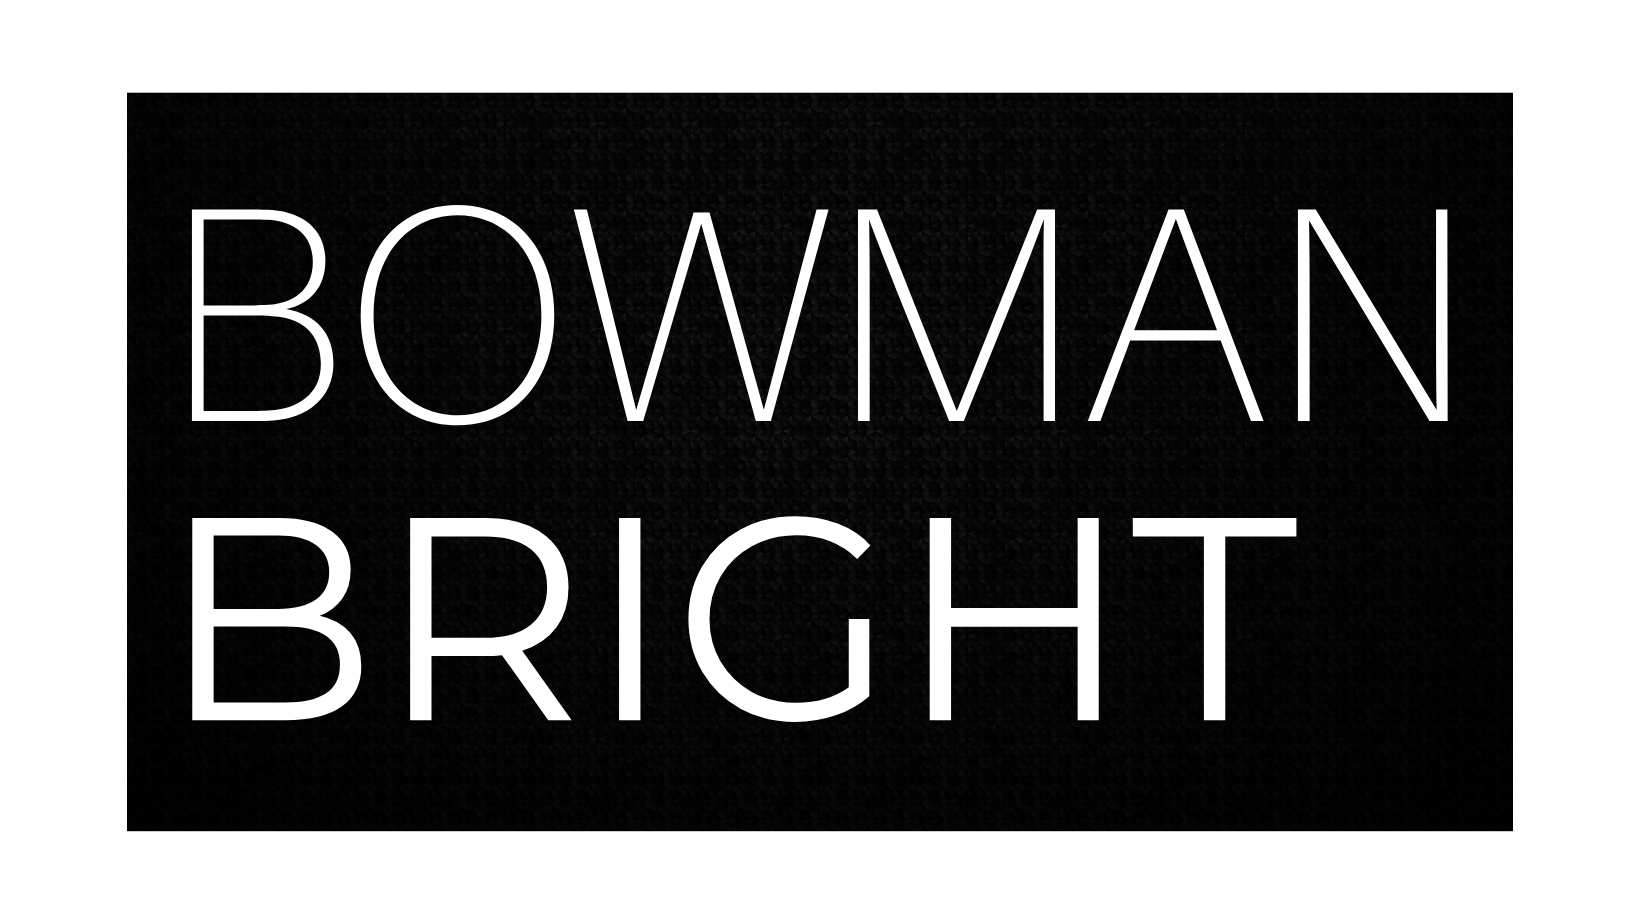 Bowman Bright